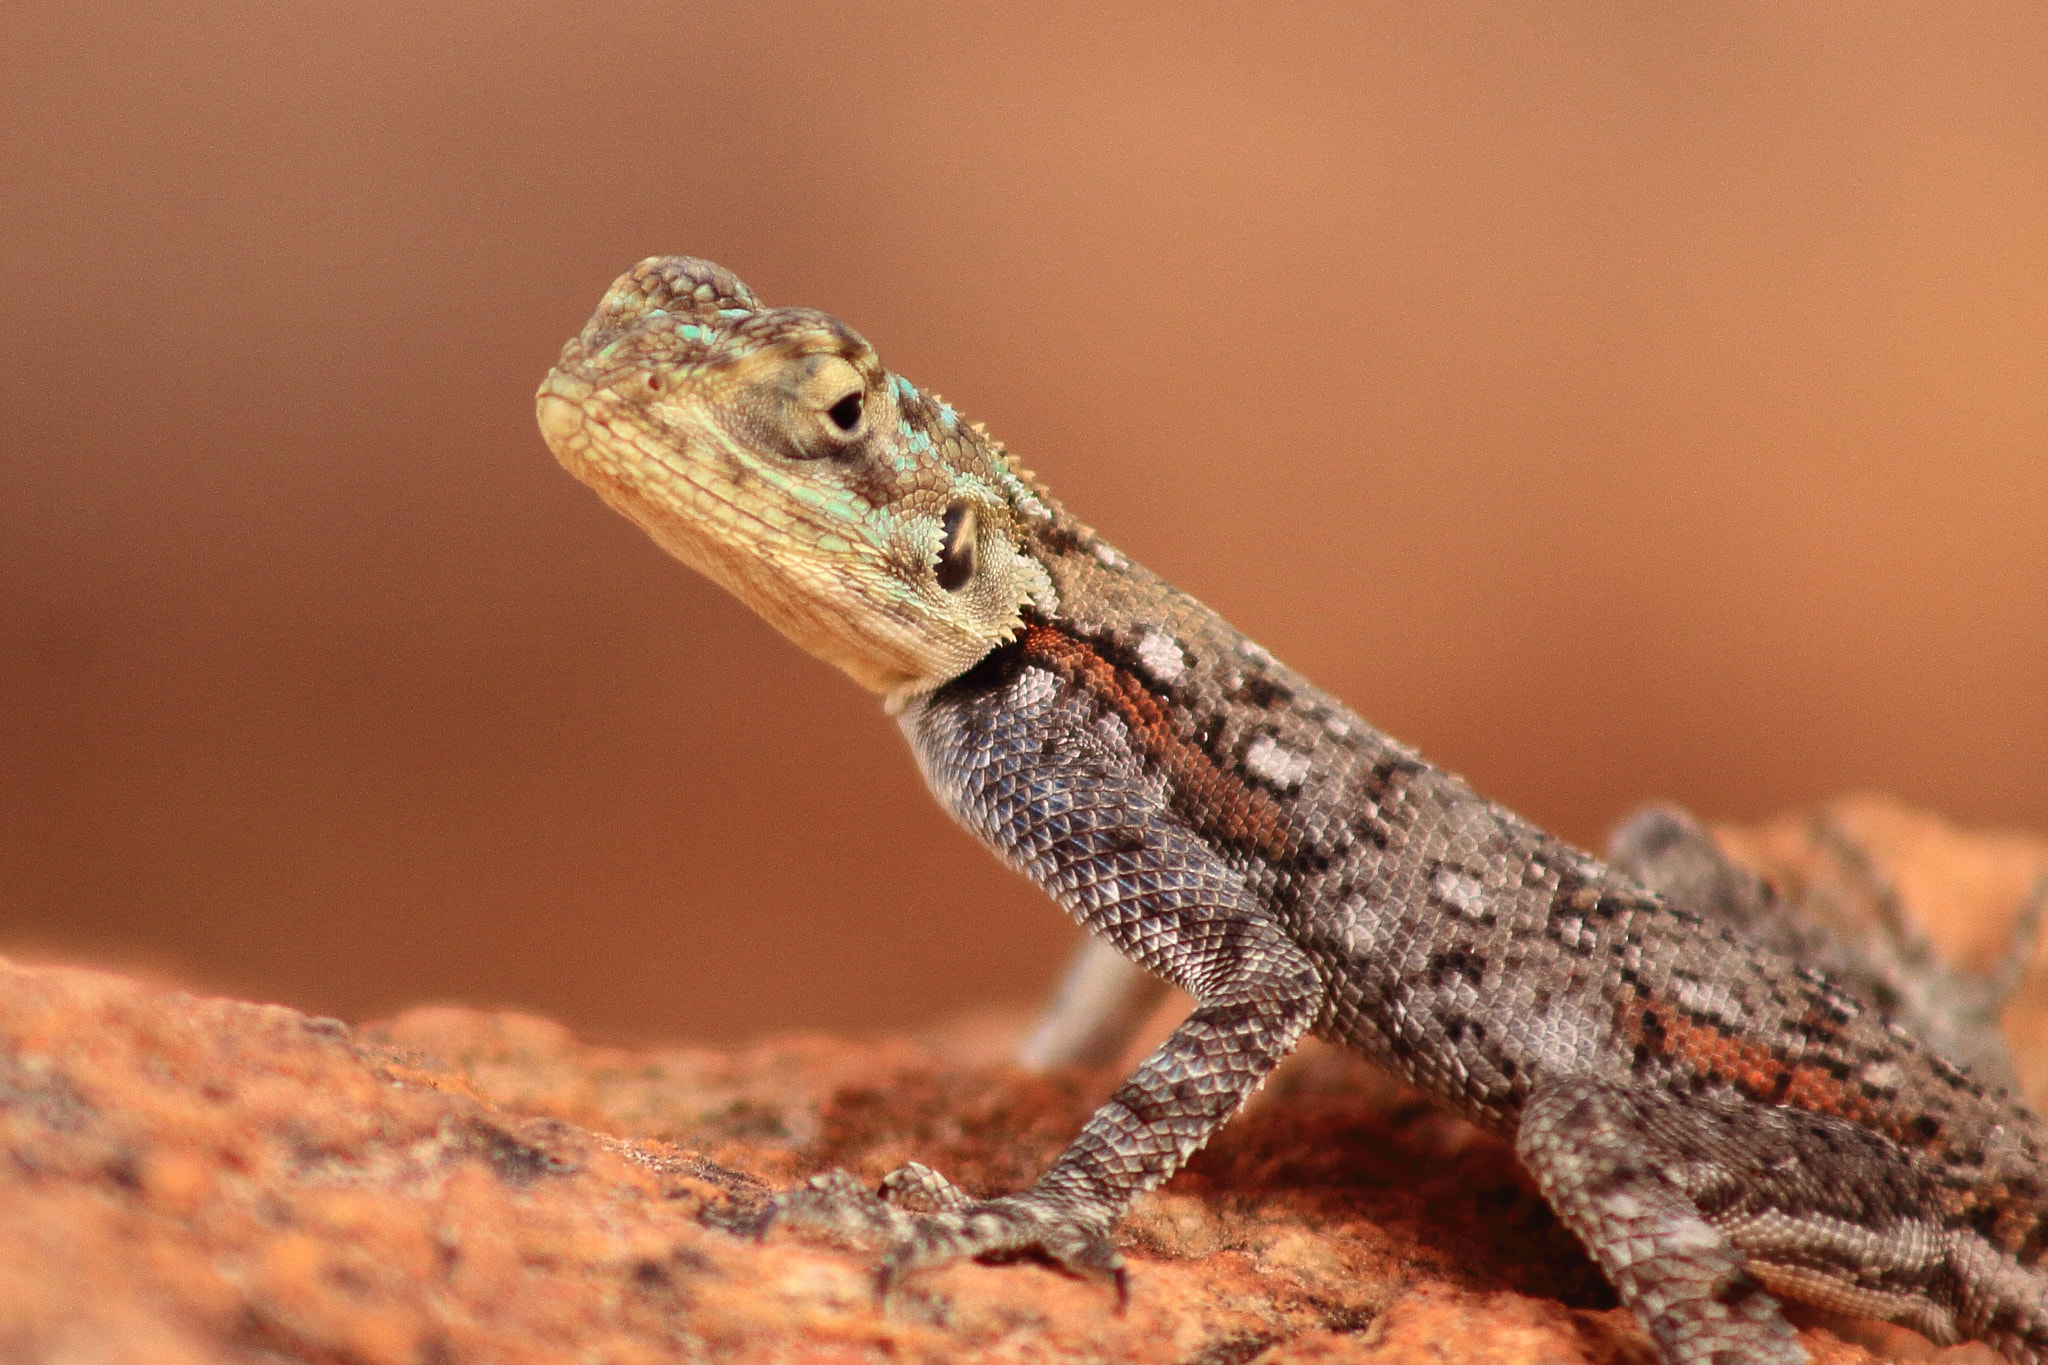 Canon EOS 50D sample photo. Kenia lizard photography